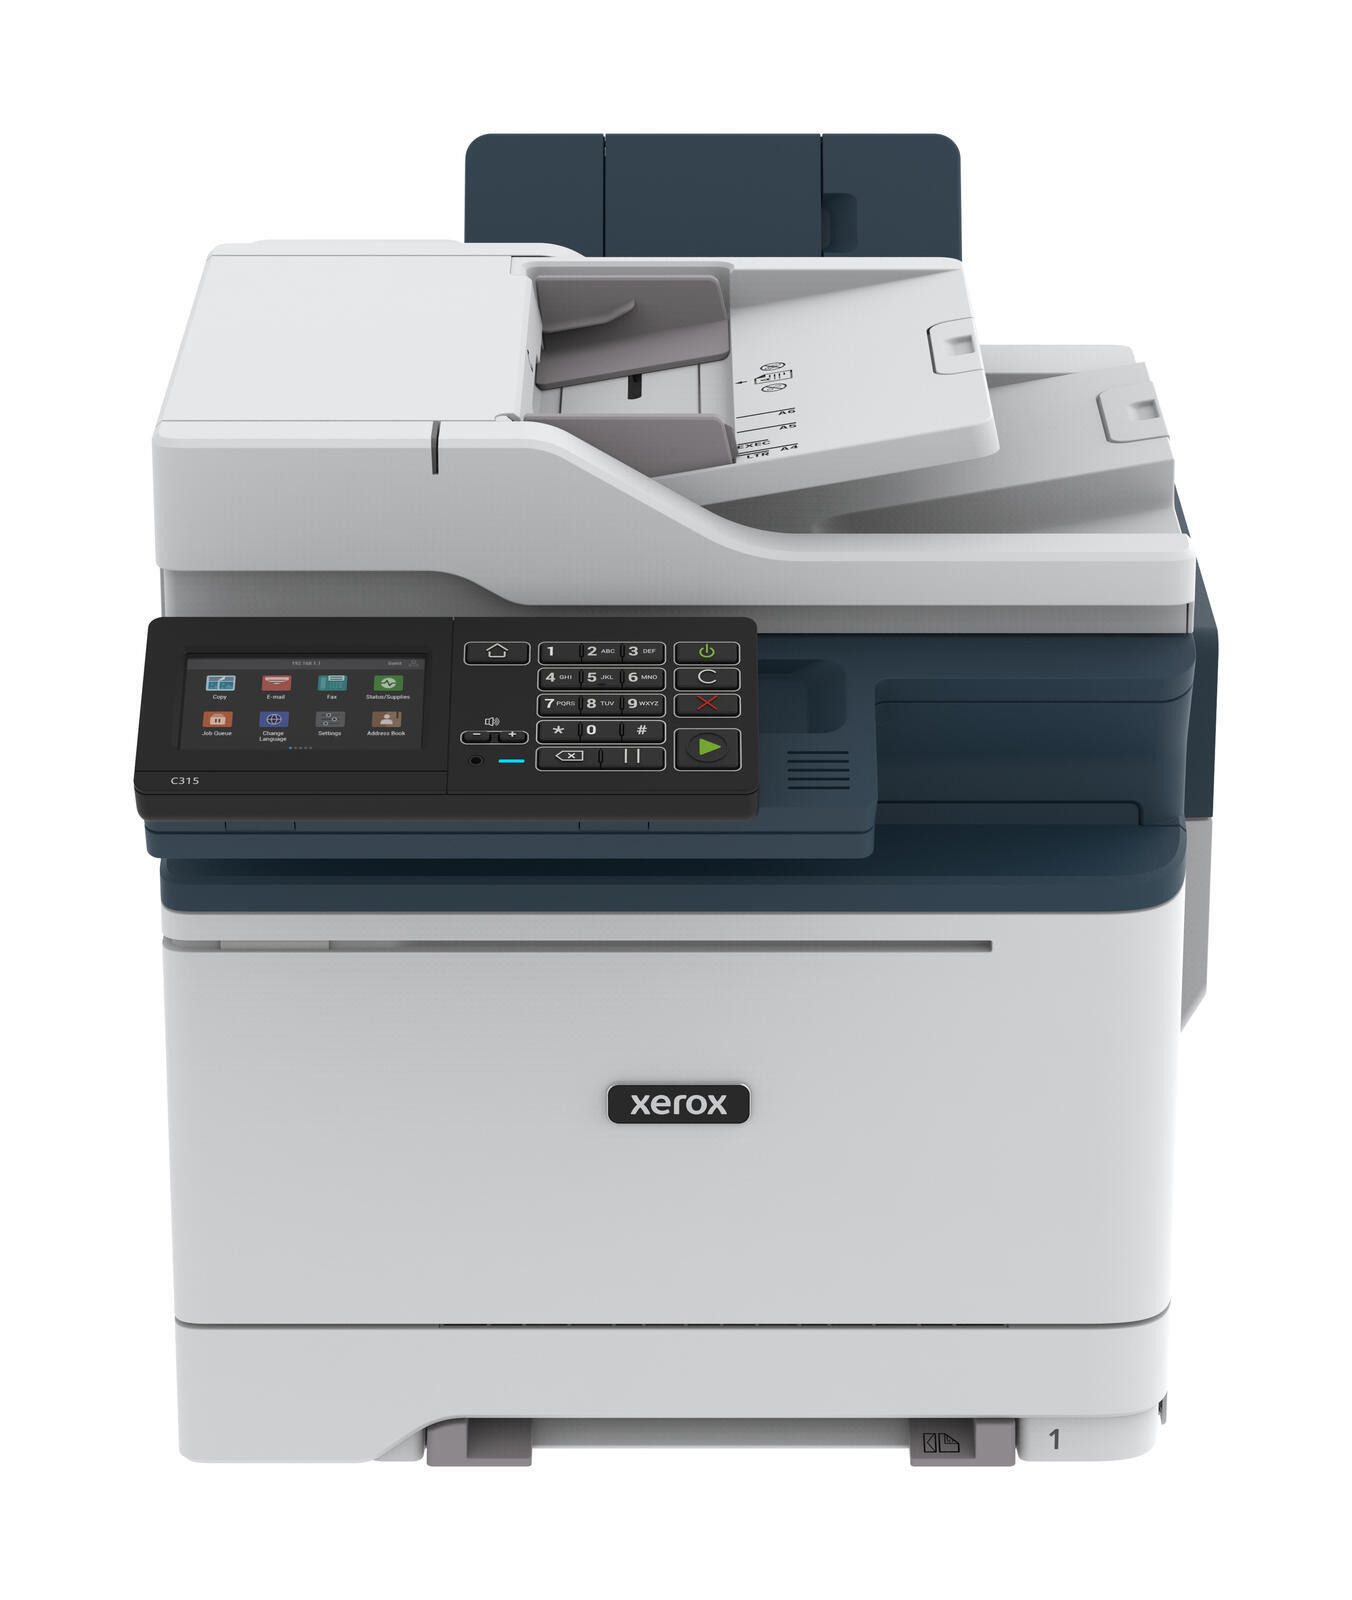 Xerox Xerox C315 Multifunktionsdrucker, (WLAN, Duplex-Druck, Duplex-Scan, Duplex- Einzug)